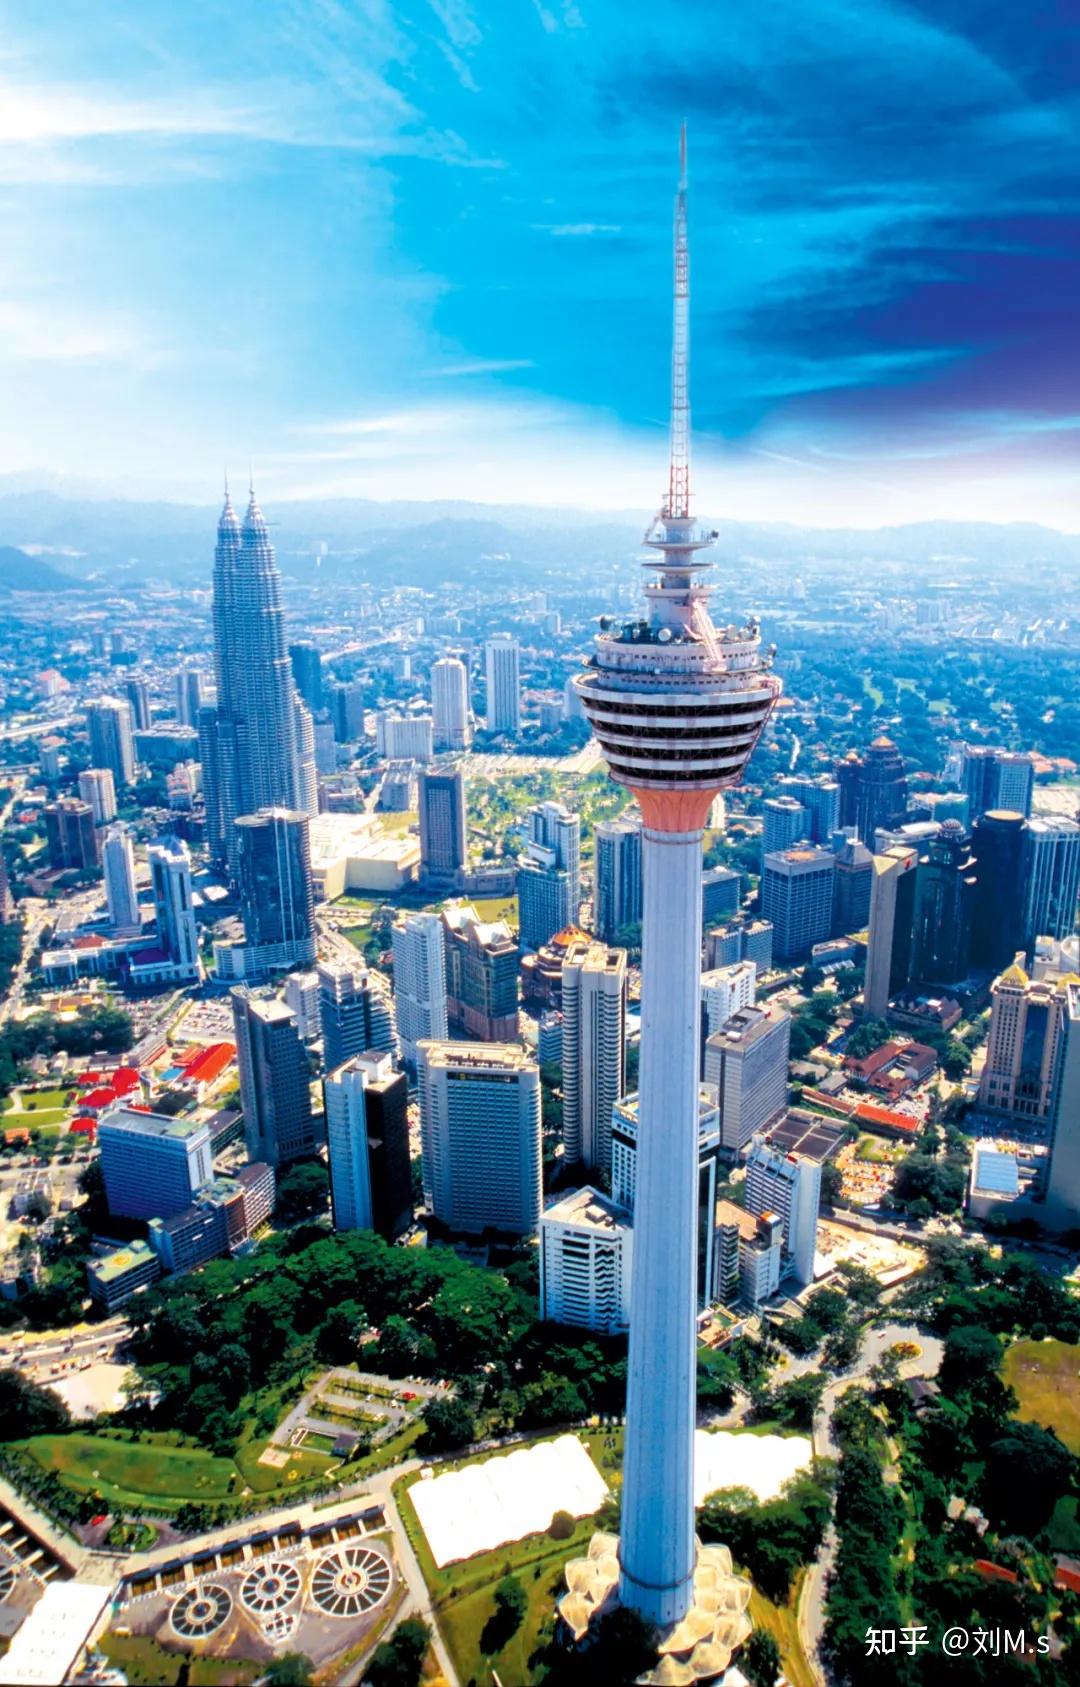 高清马来西亚吉隆坡双子塔建筑风景图片壁纸图片-壁纸图片大全